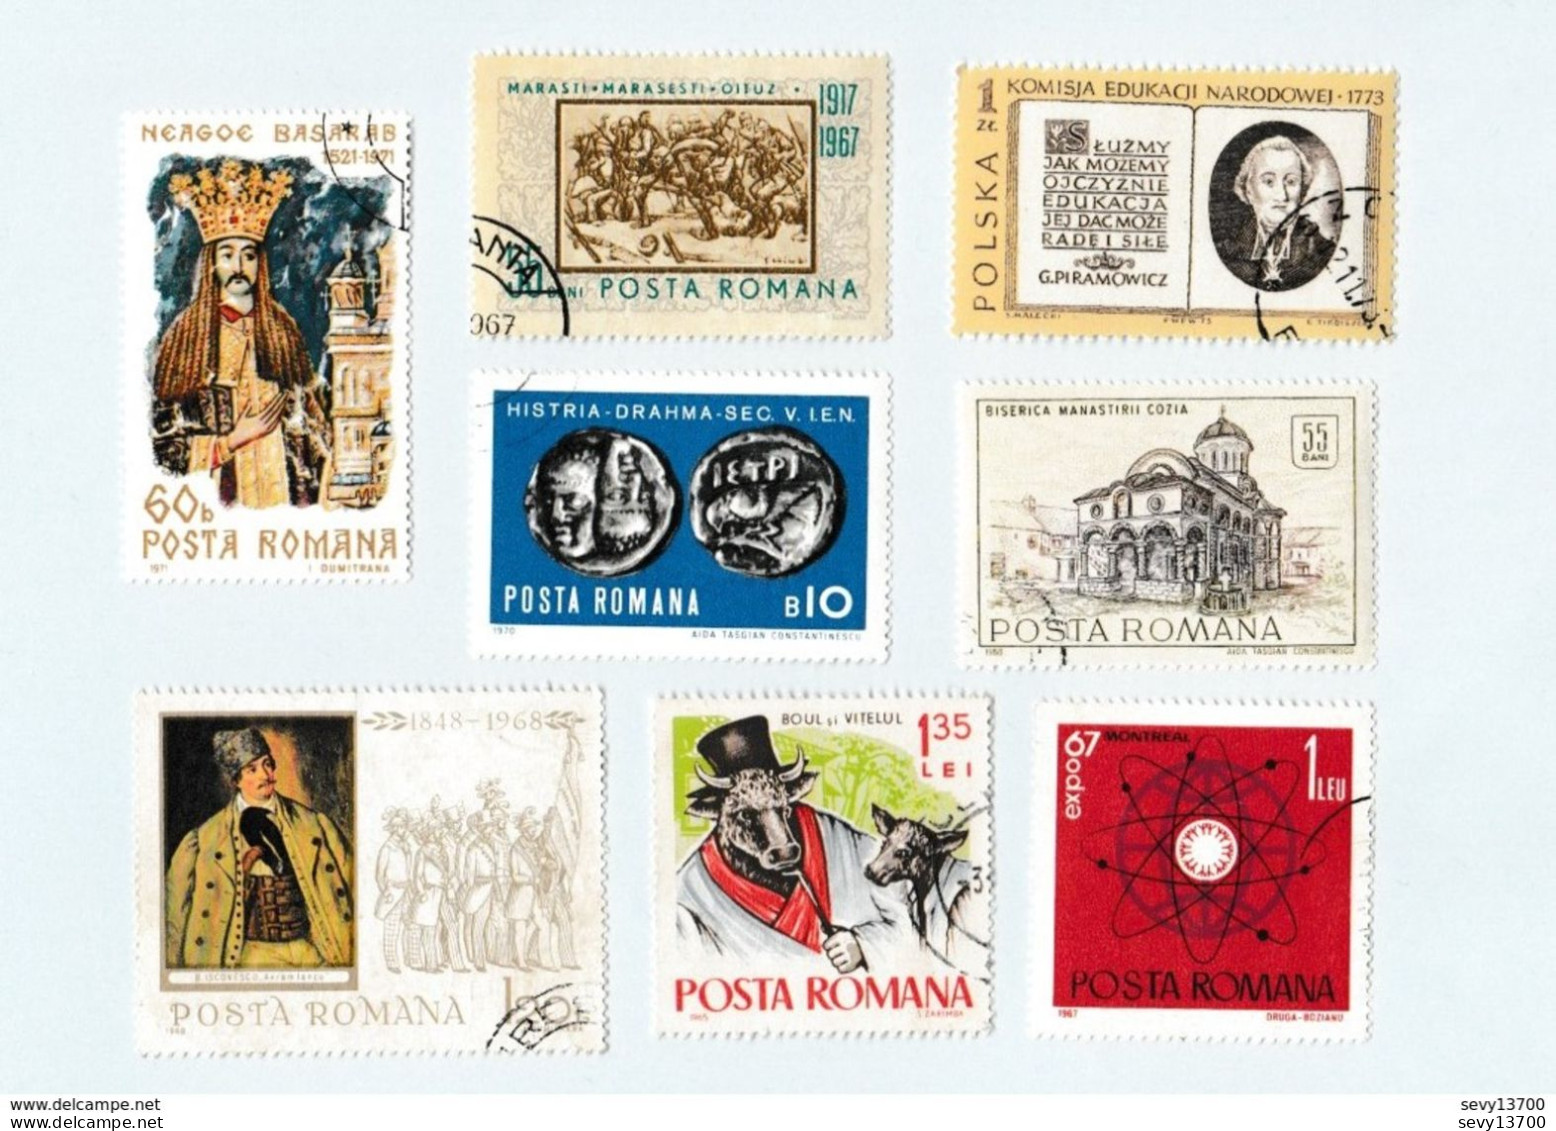 Roumanie lot de 50 timbres